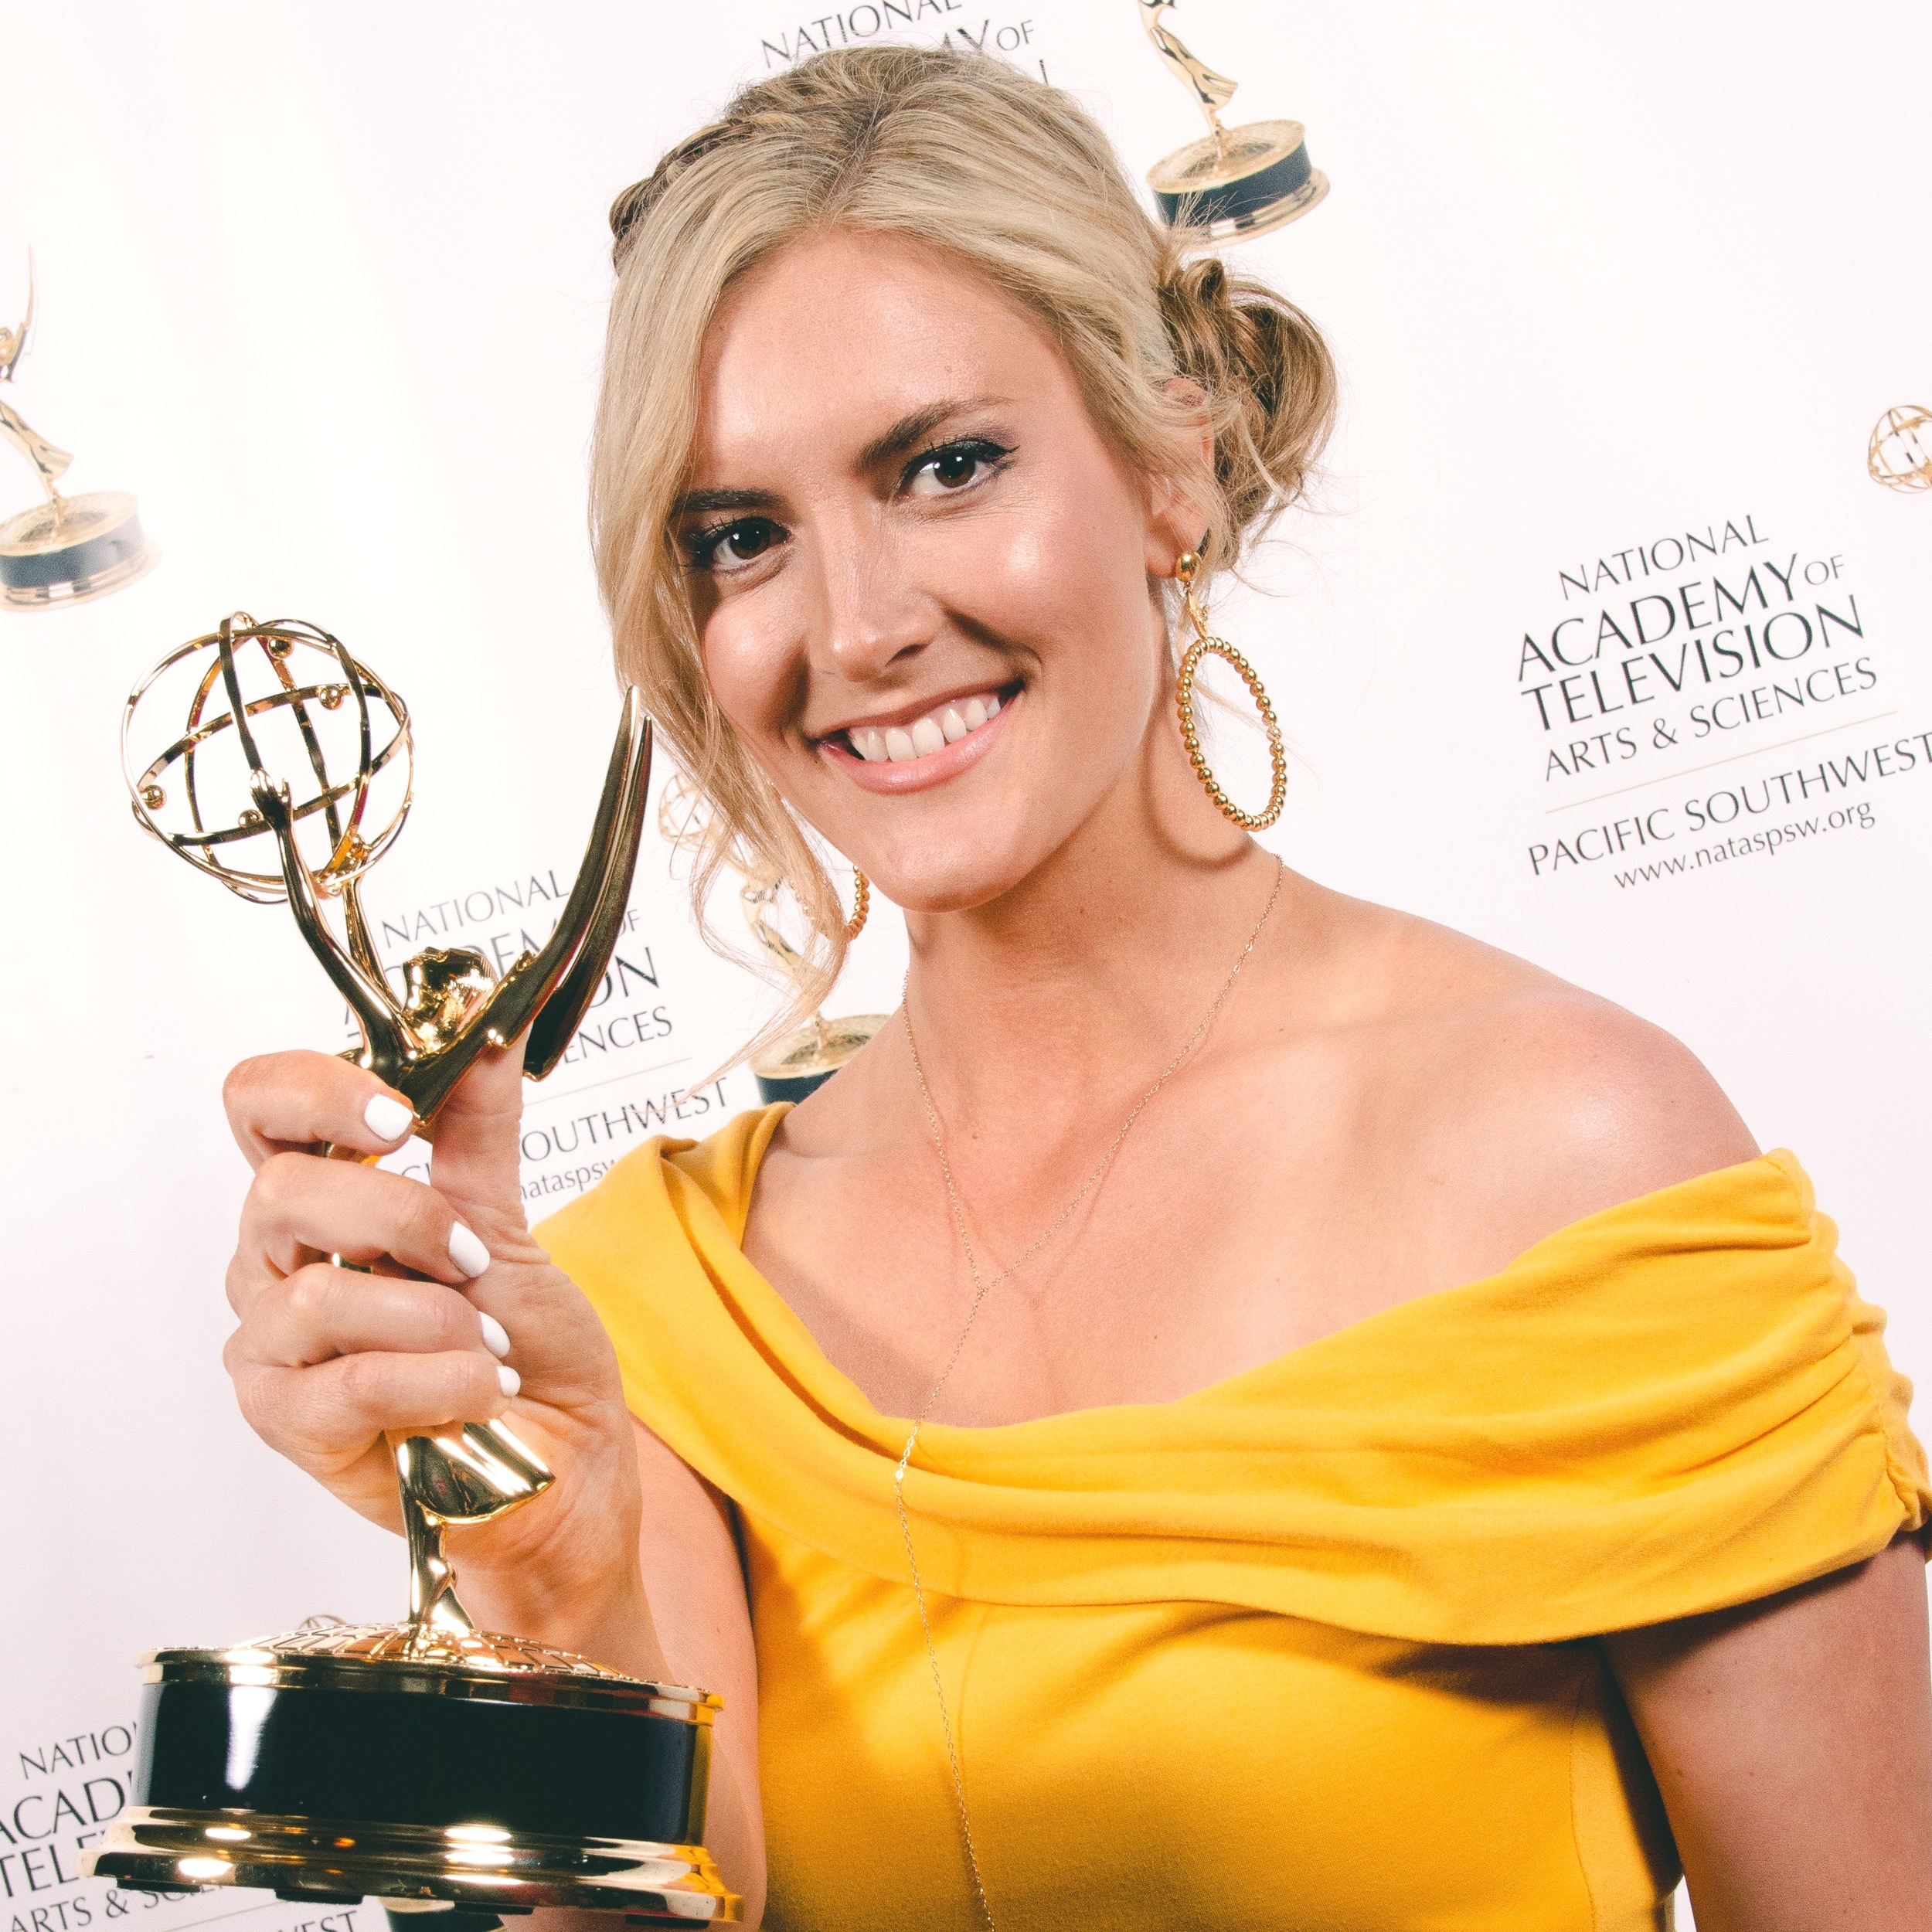 Emmys PSW 2019 Recipients